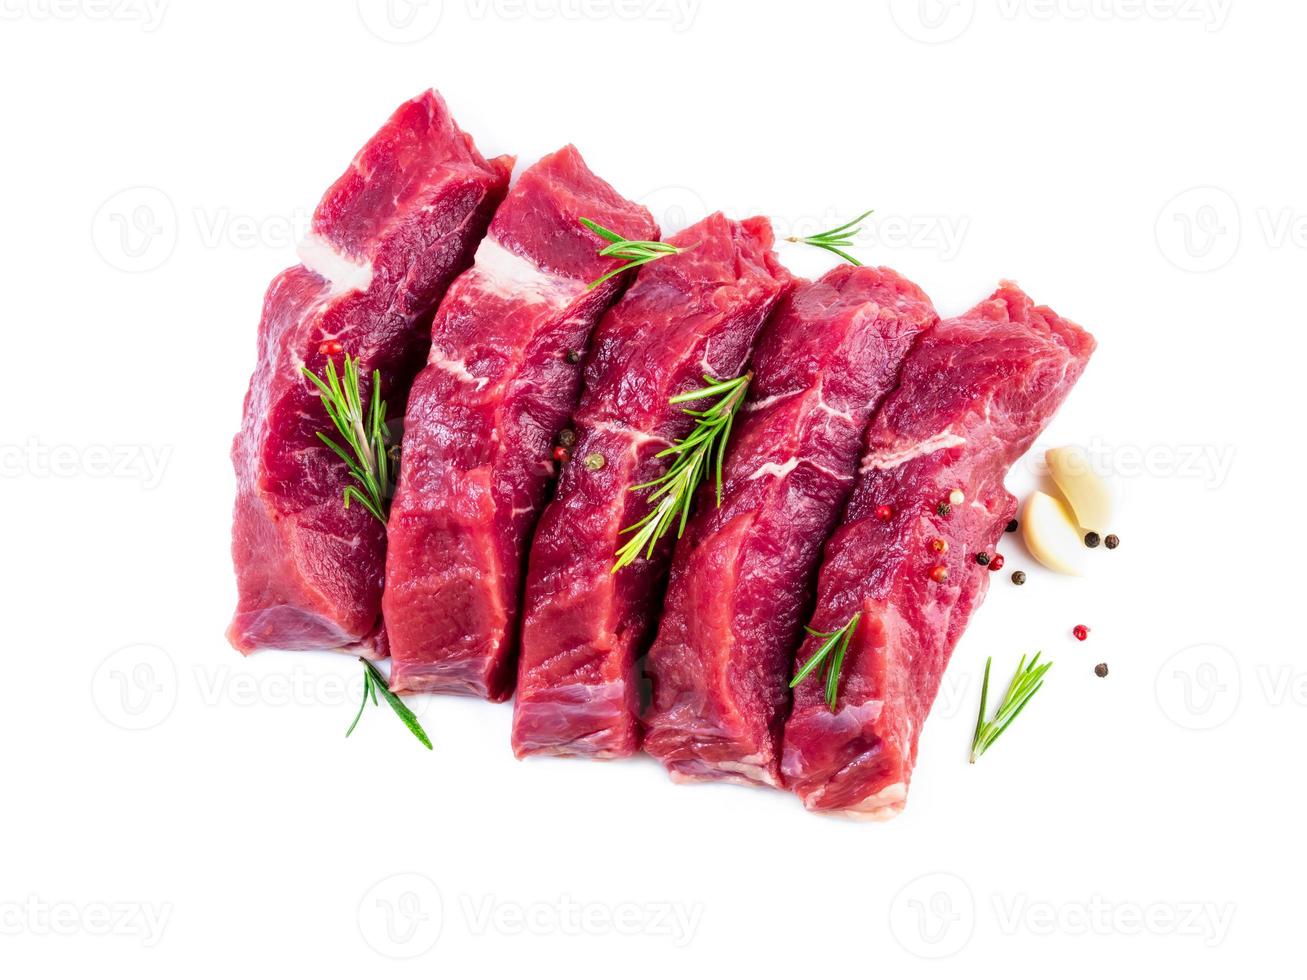 rauw vlees, biefstuk met kruiden op witte achtergrond, bovenaanzicht foto